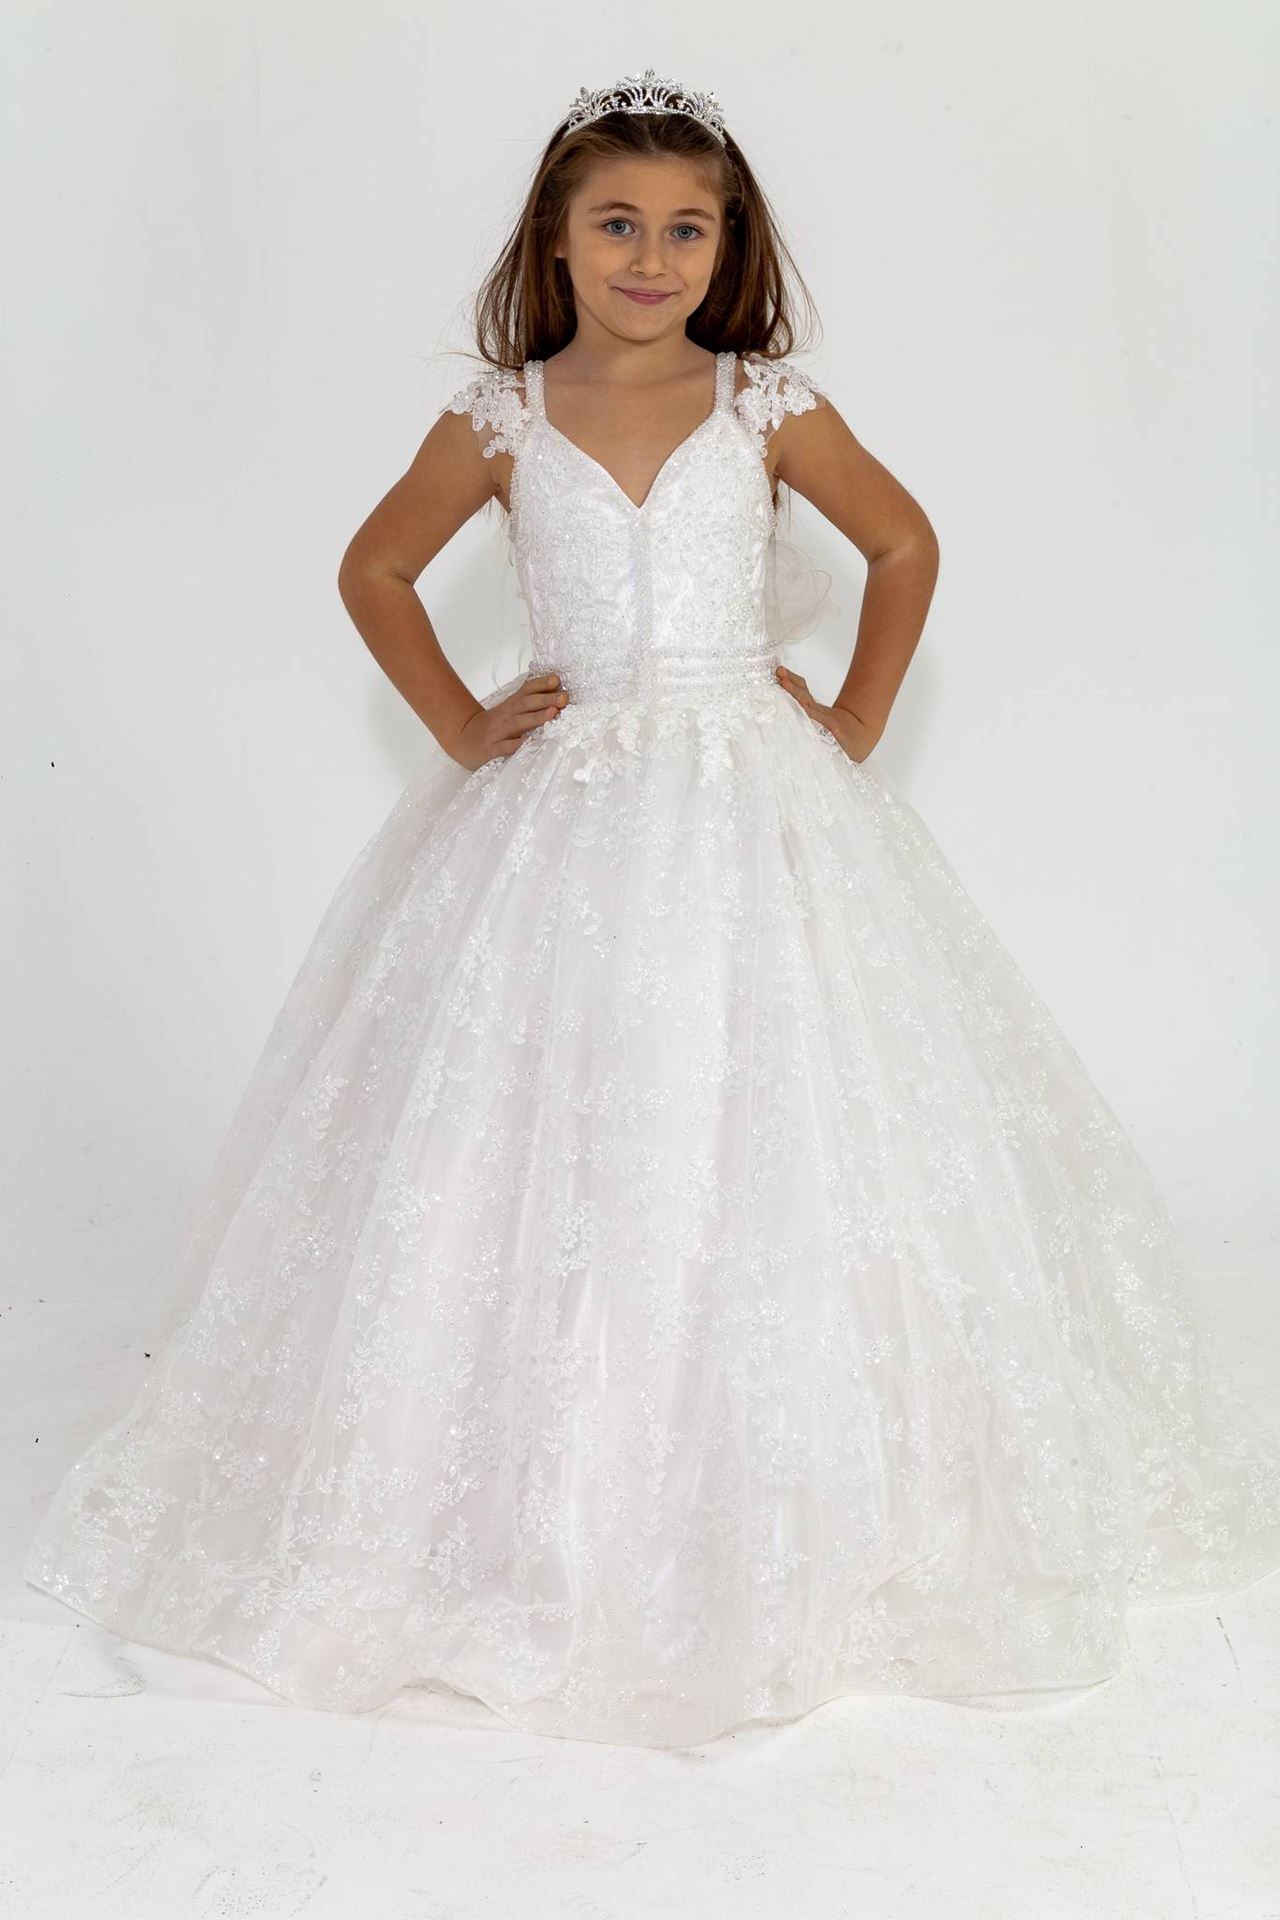 Vesta 7-11 Years Old Girl Dress 30022 Off White